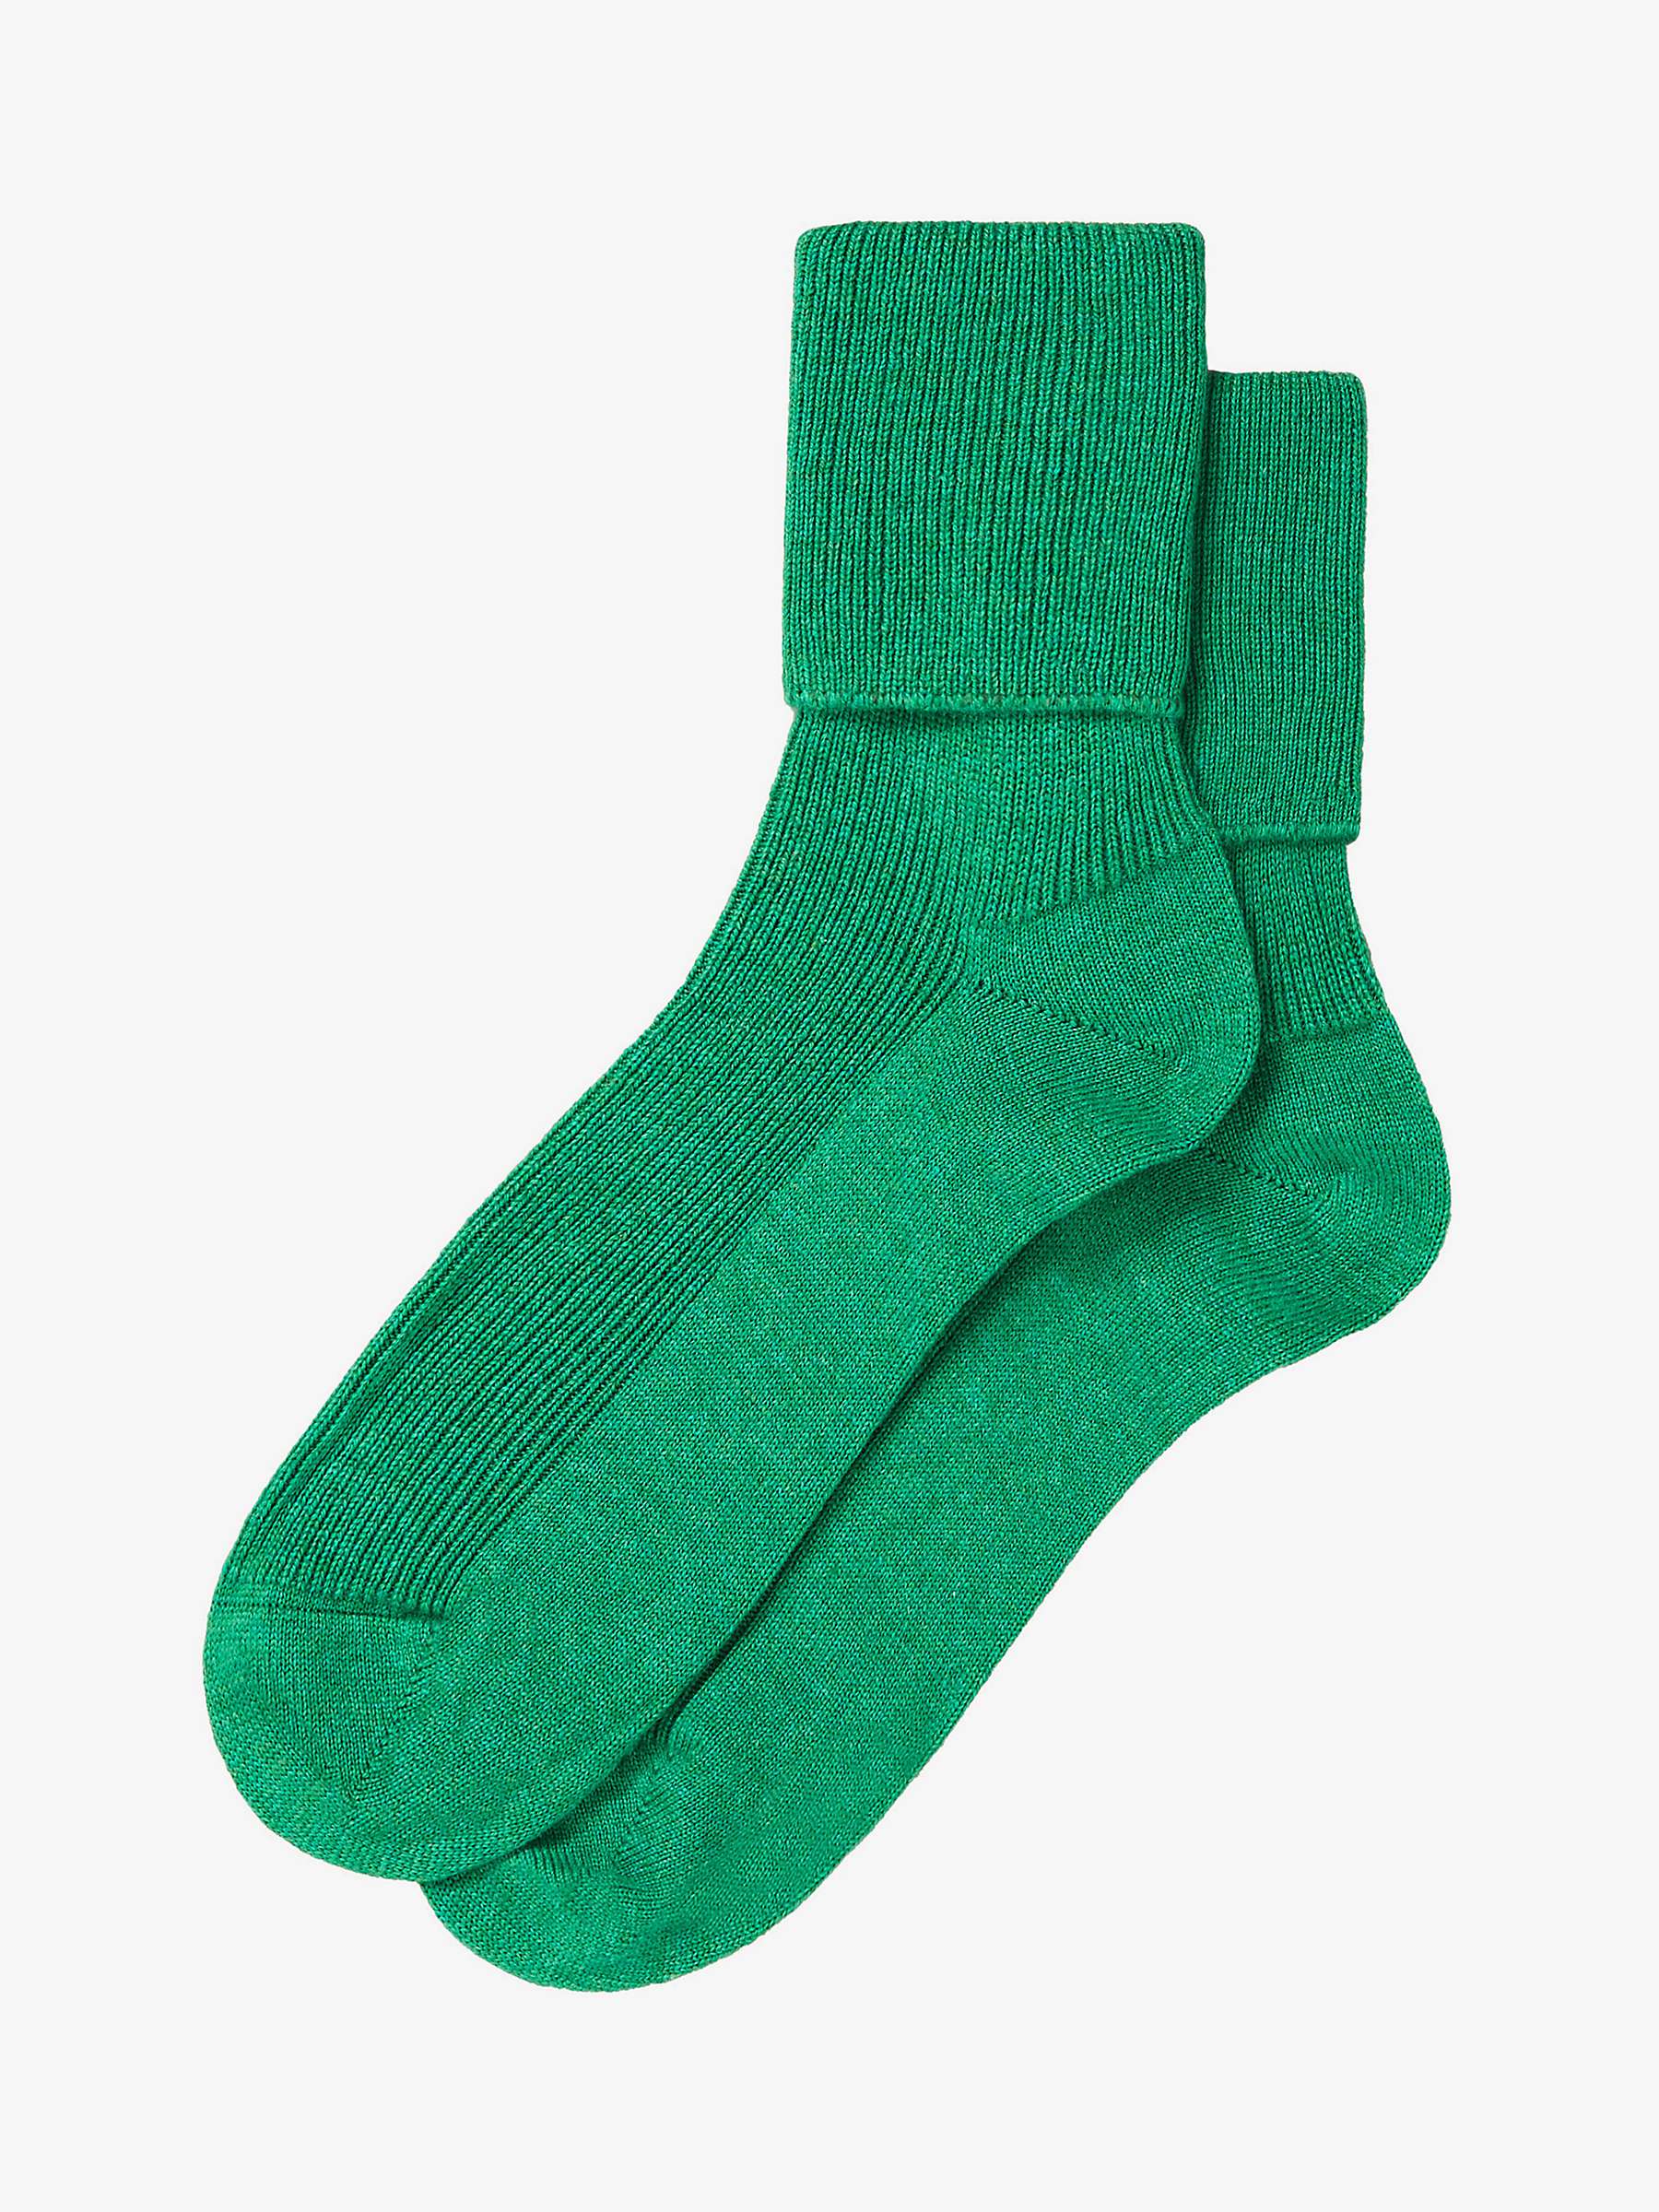 Buy Brora Cashmere Blend Socks Online at johnlewis.com